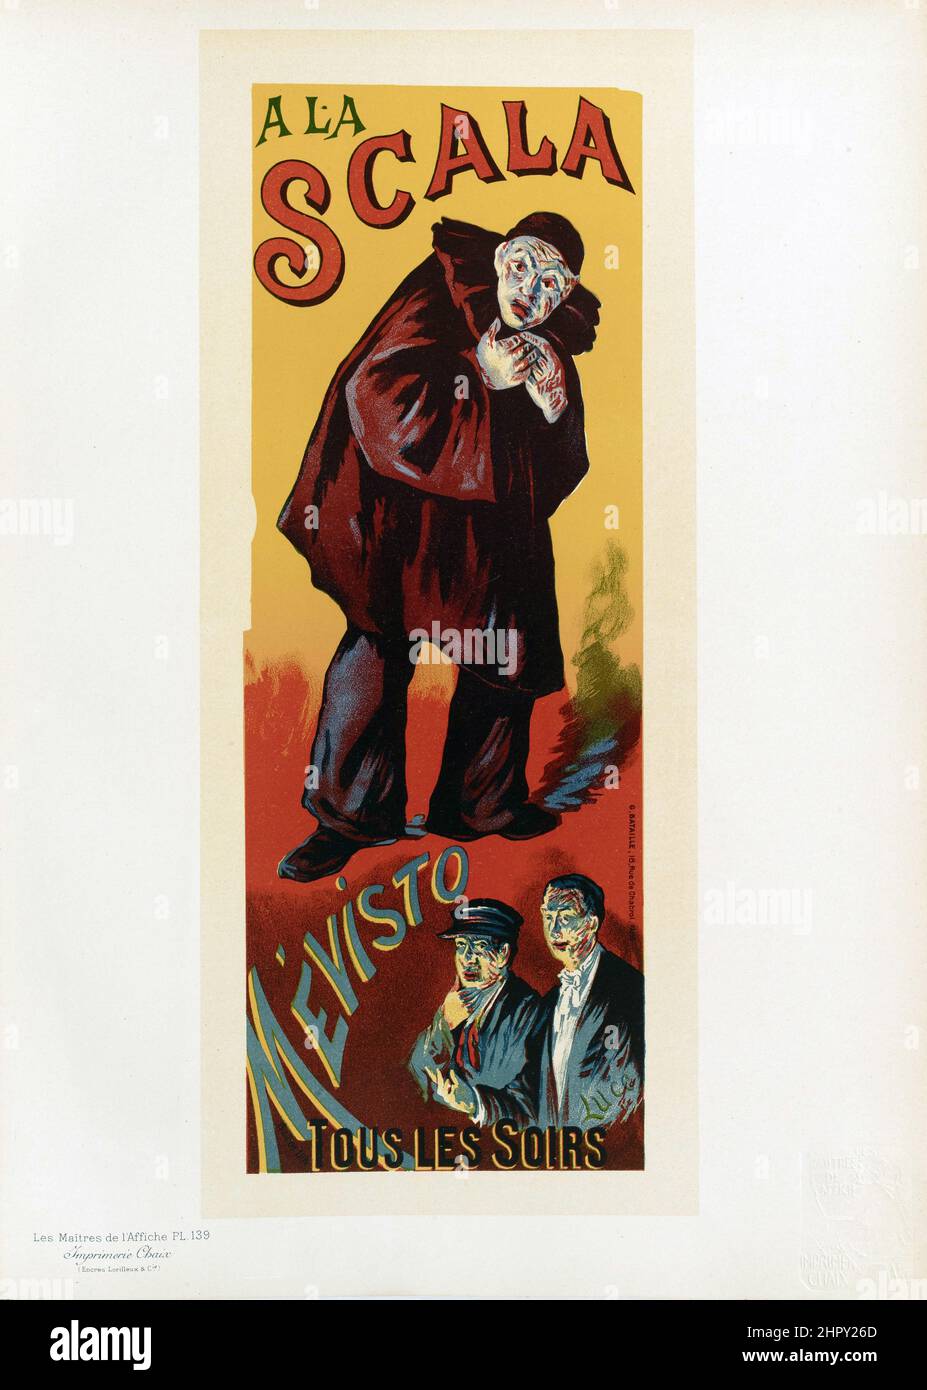 Maitres de l'affiche Vol 3 - Plate 139 - Maximilien Luce, 1895 - A La Scala, Mevisto feat. a Clown. Tous Les Soirs. Stock Photo